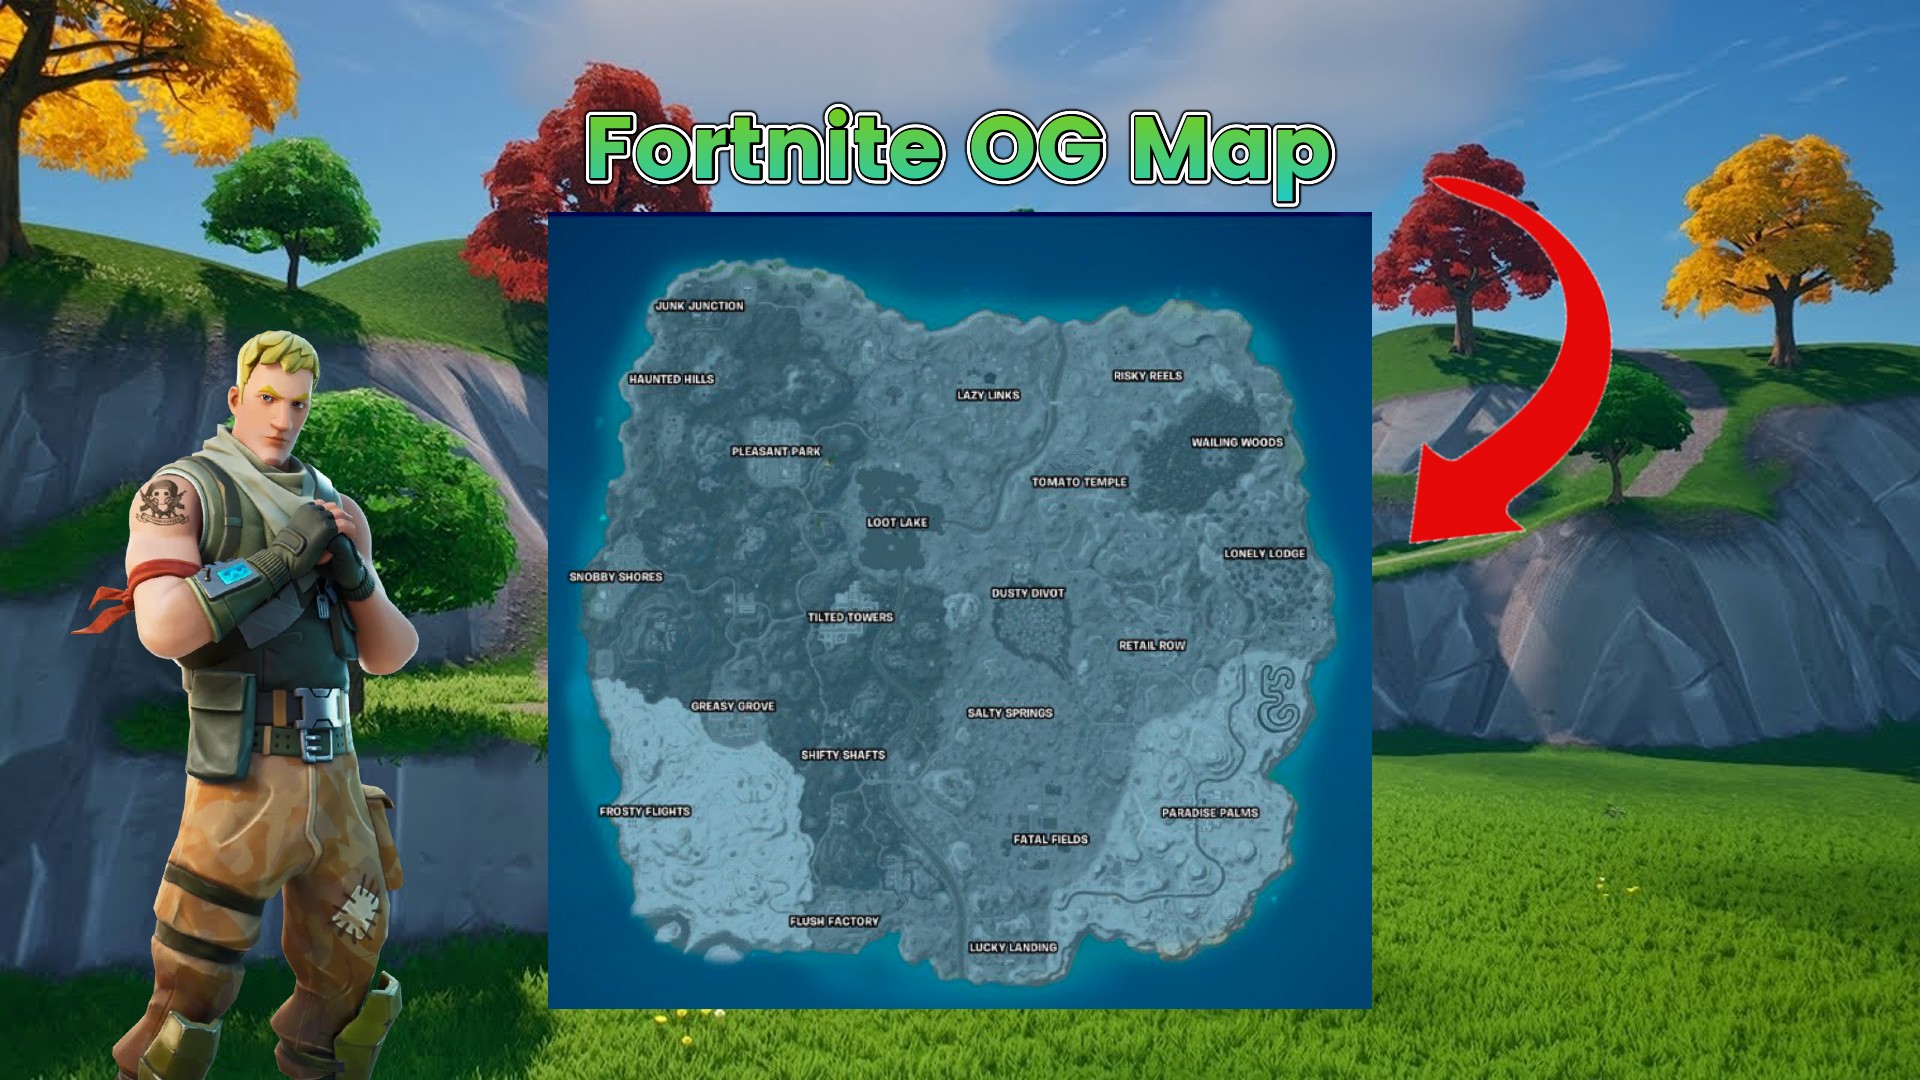 Evolution of Fortnite Map (Chapter 1 Season 1 - Chapter 4 Season 4